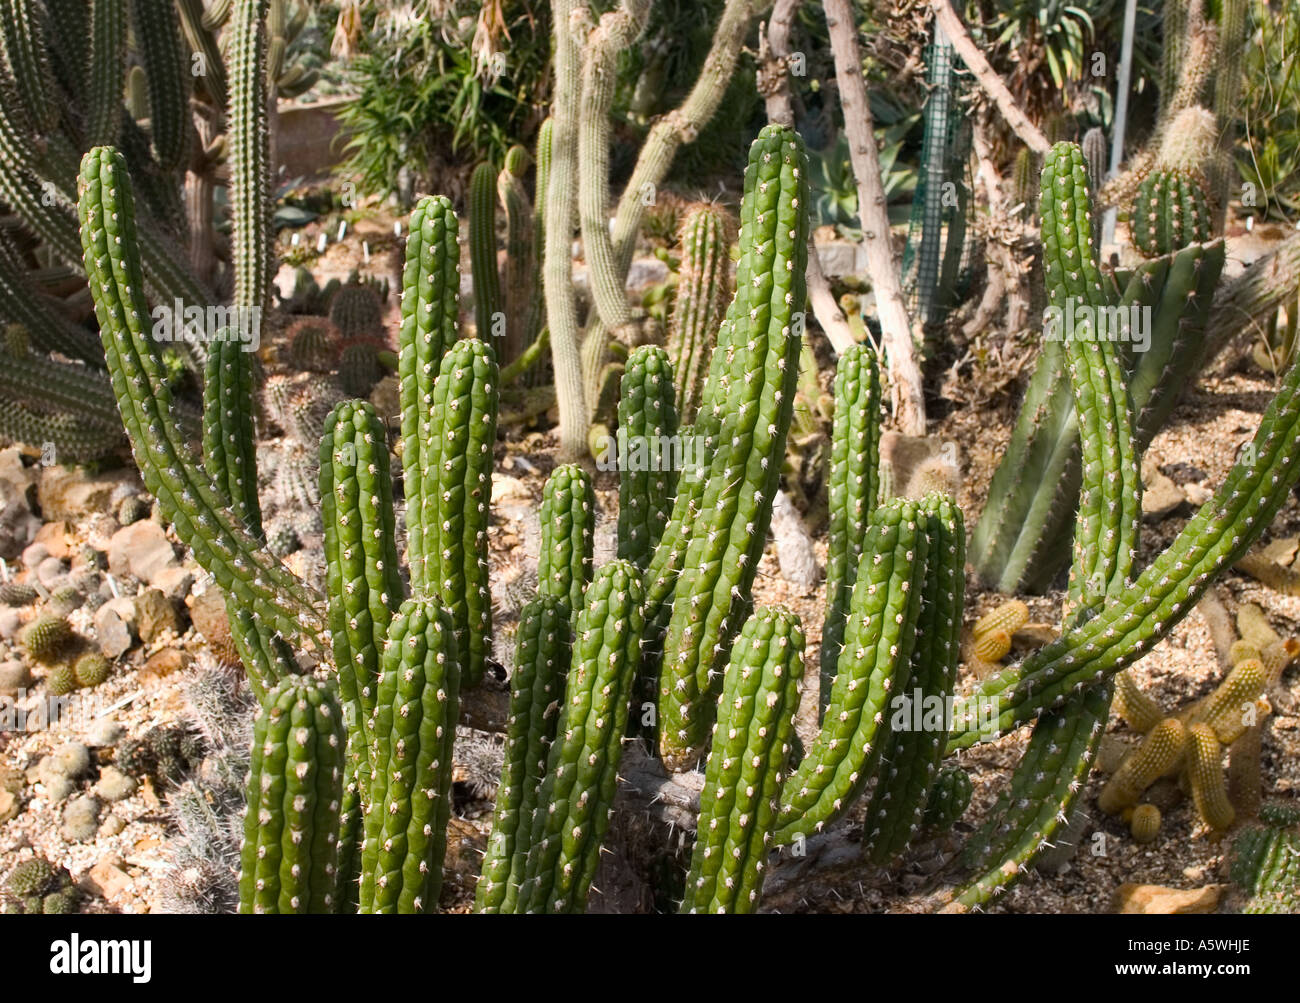 Cacti shot in natural environment Stock Photo